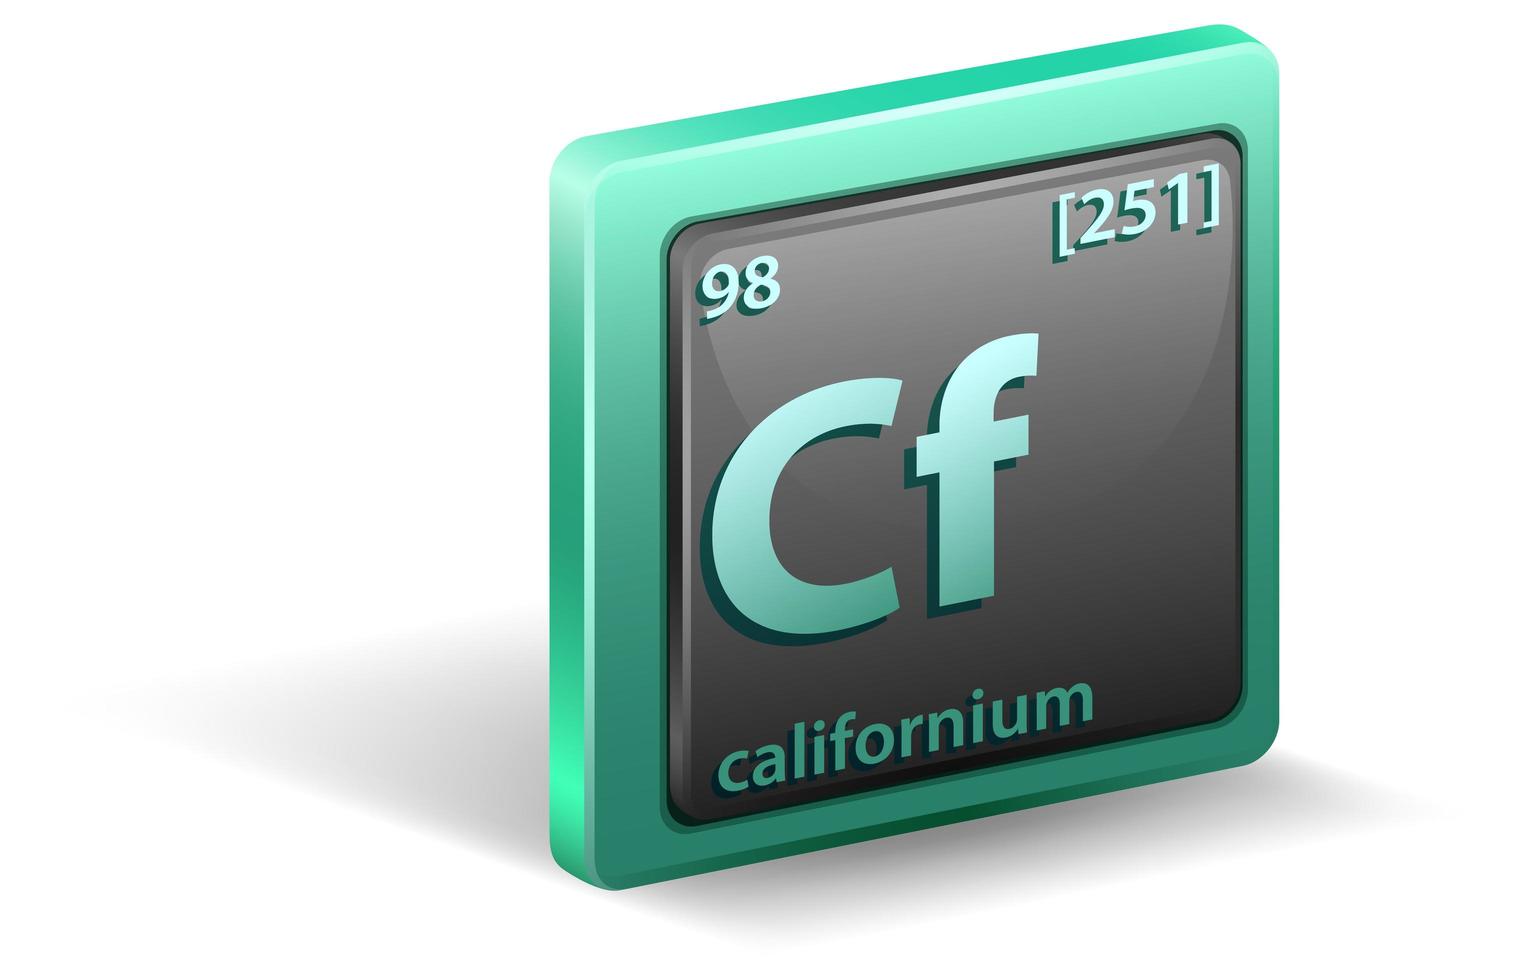 elemento chimico californio. simbolo chimico con numero atomico e massa atomica. vettore